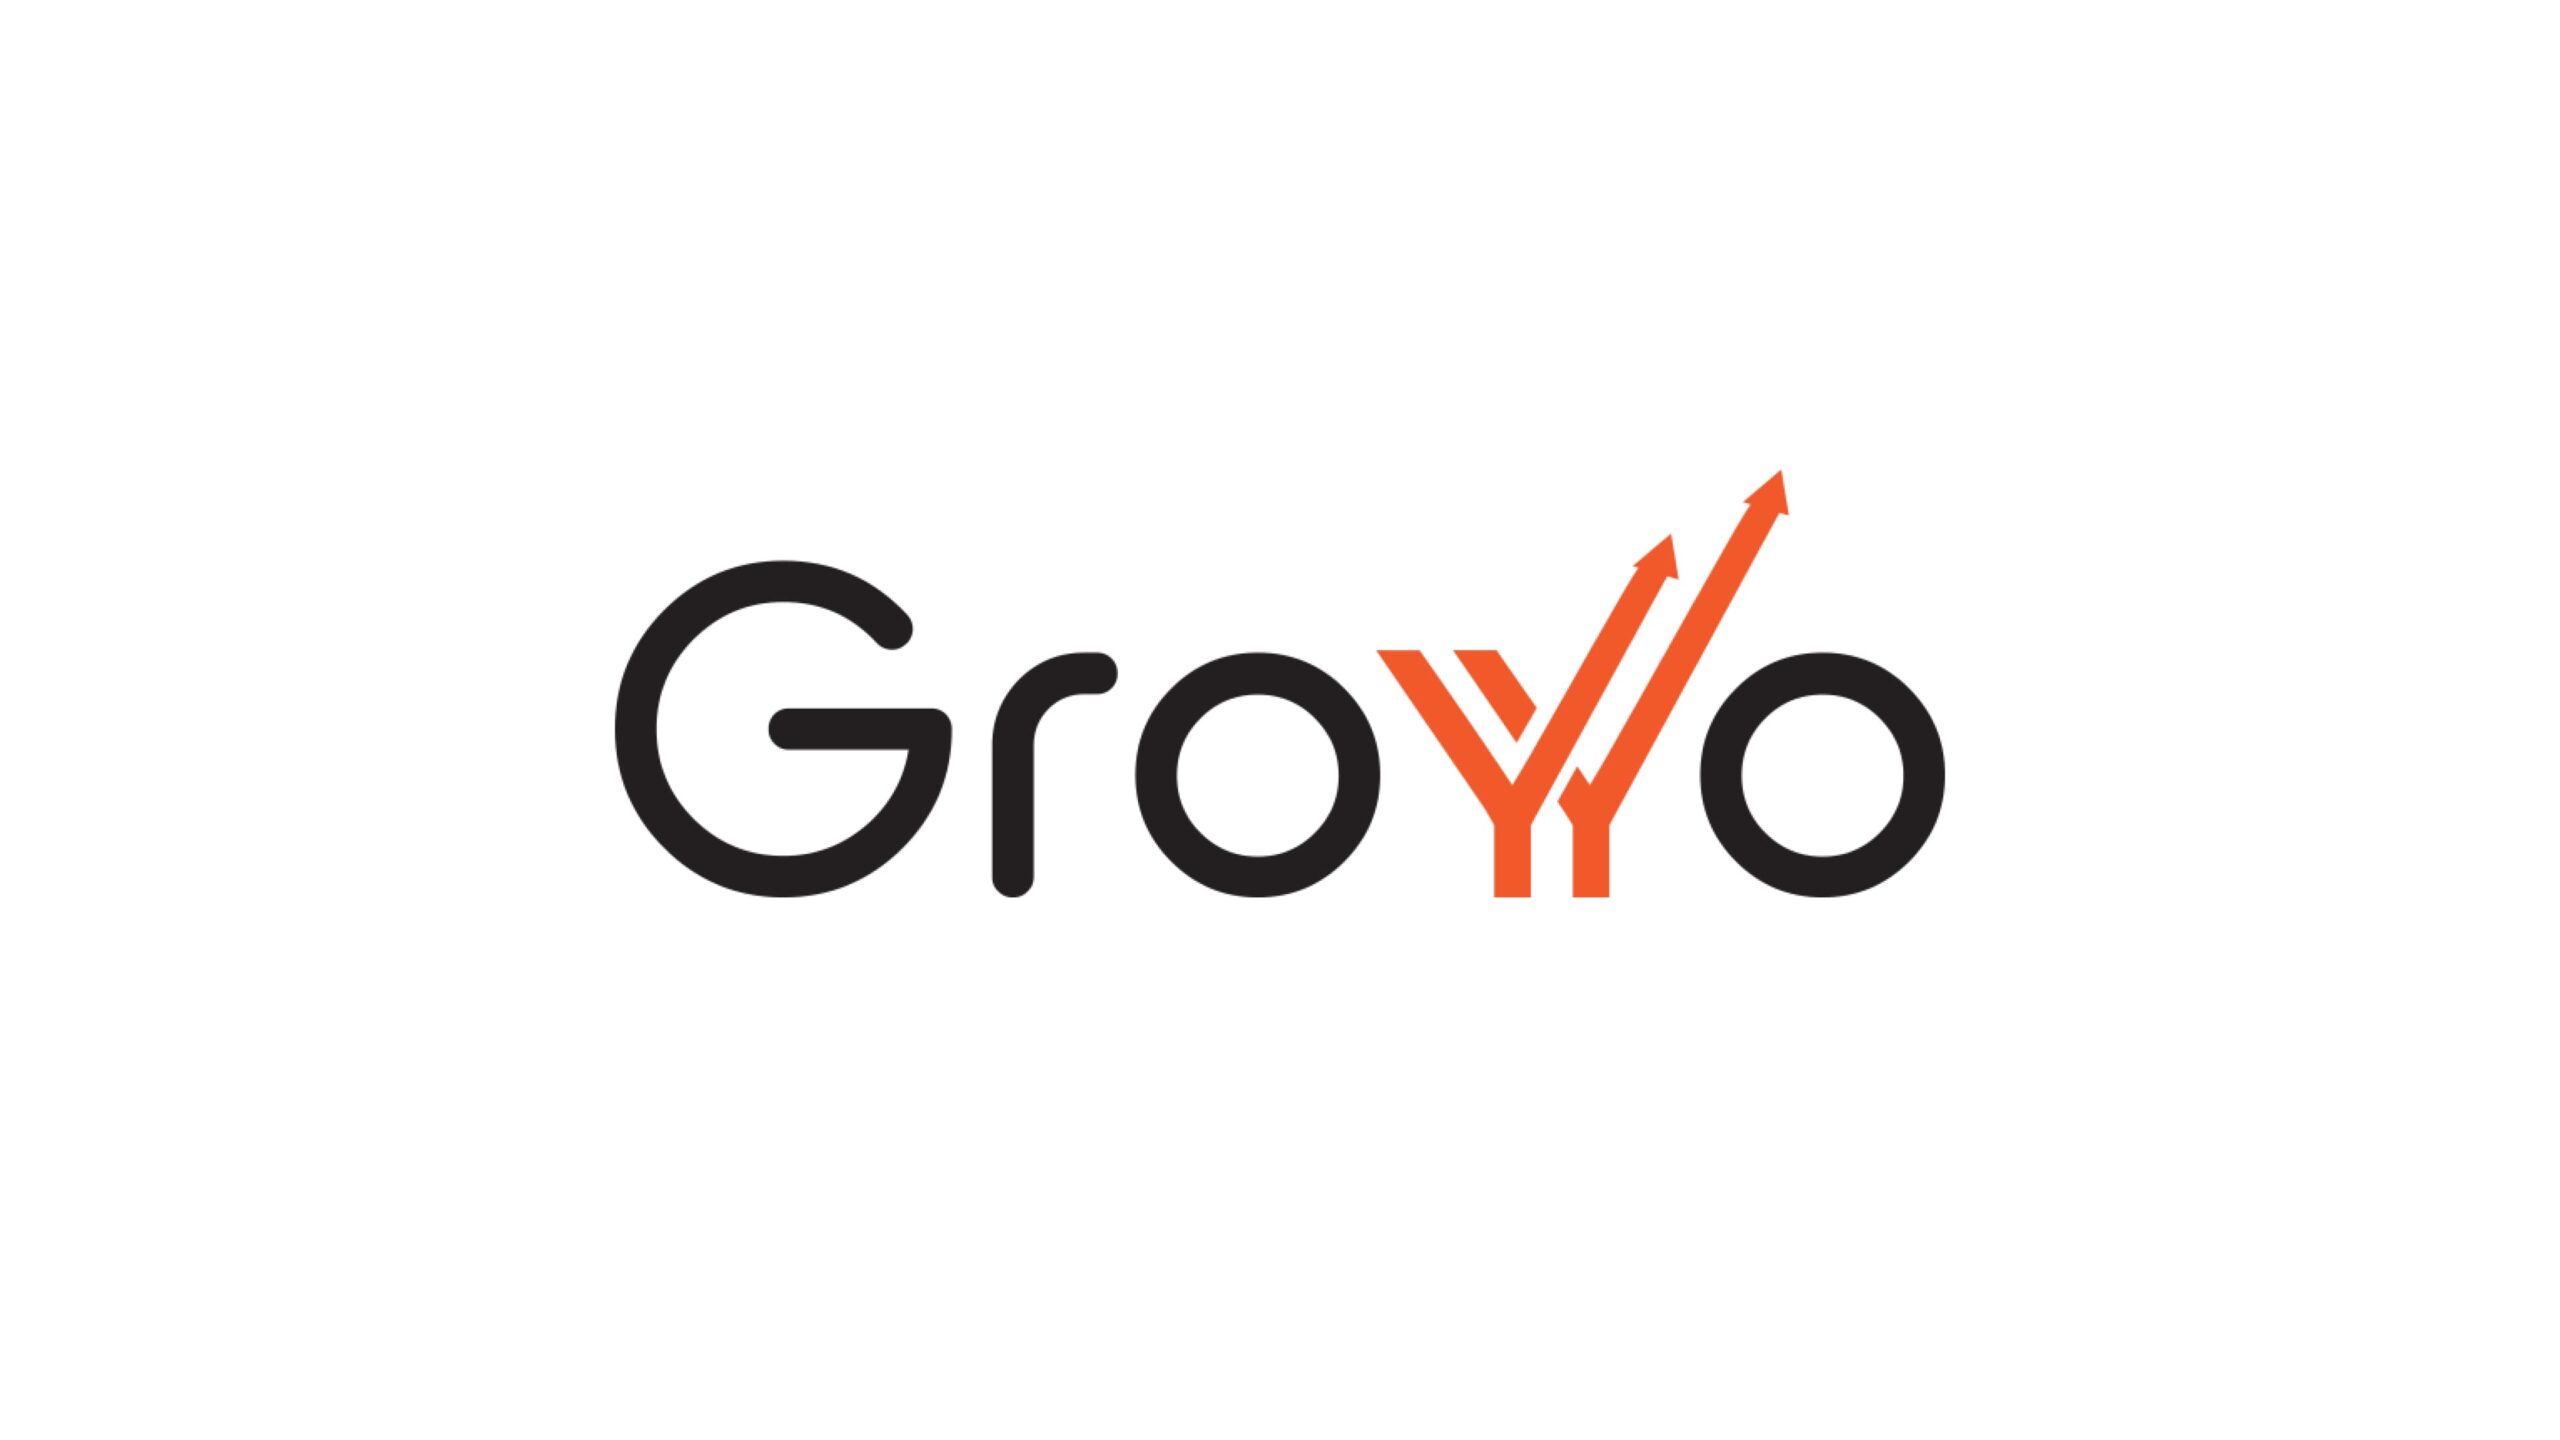 Groyyo、製造自動化を促進するために540万ドルの負債融資を確保